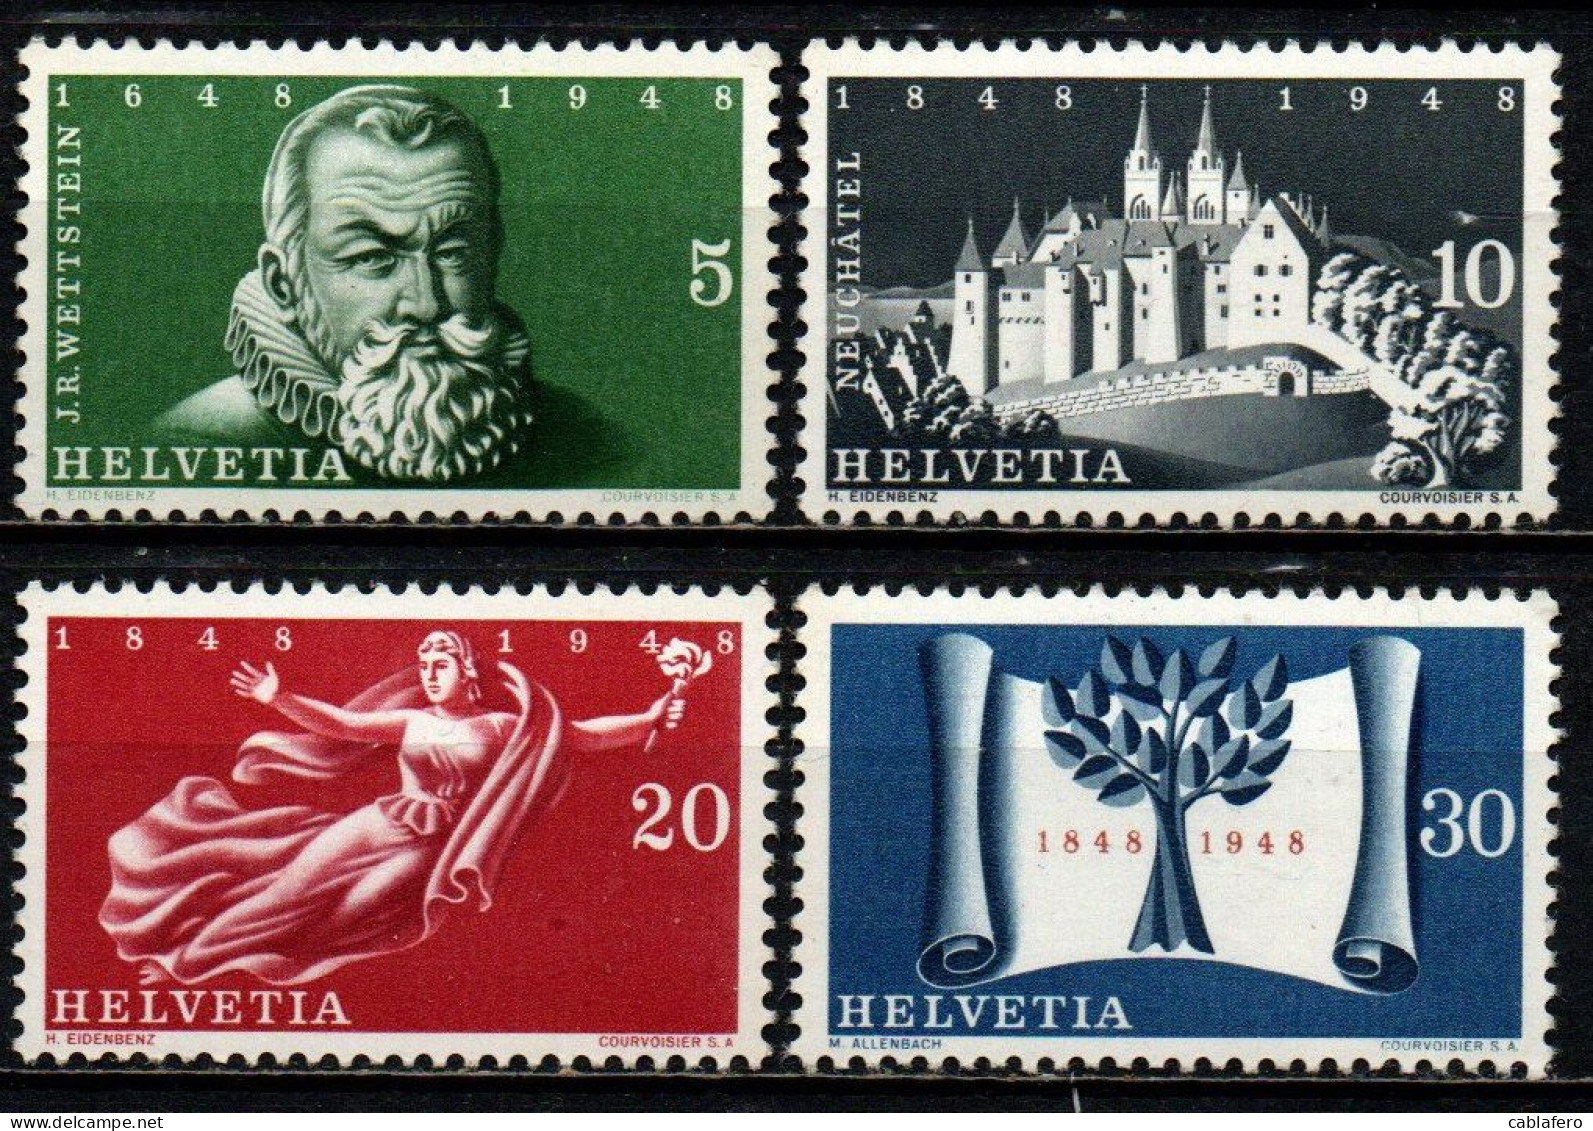 SVIZZERA - 1948 - 3° CENTENARIO DEL TRATTATO DI WESTFALIA E CENTENARIO DELLA COSTITUZIONE - MNH - Unused Stamps